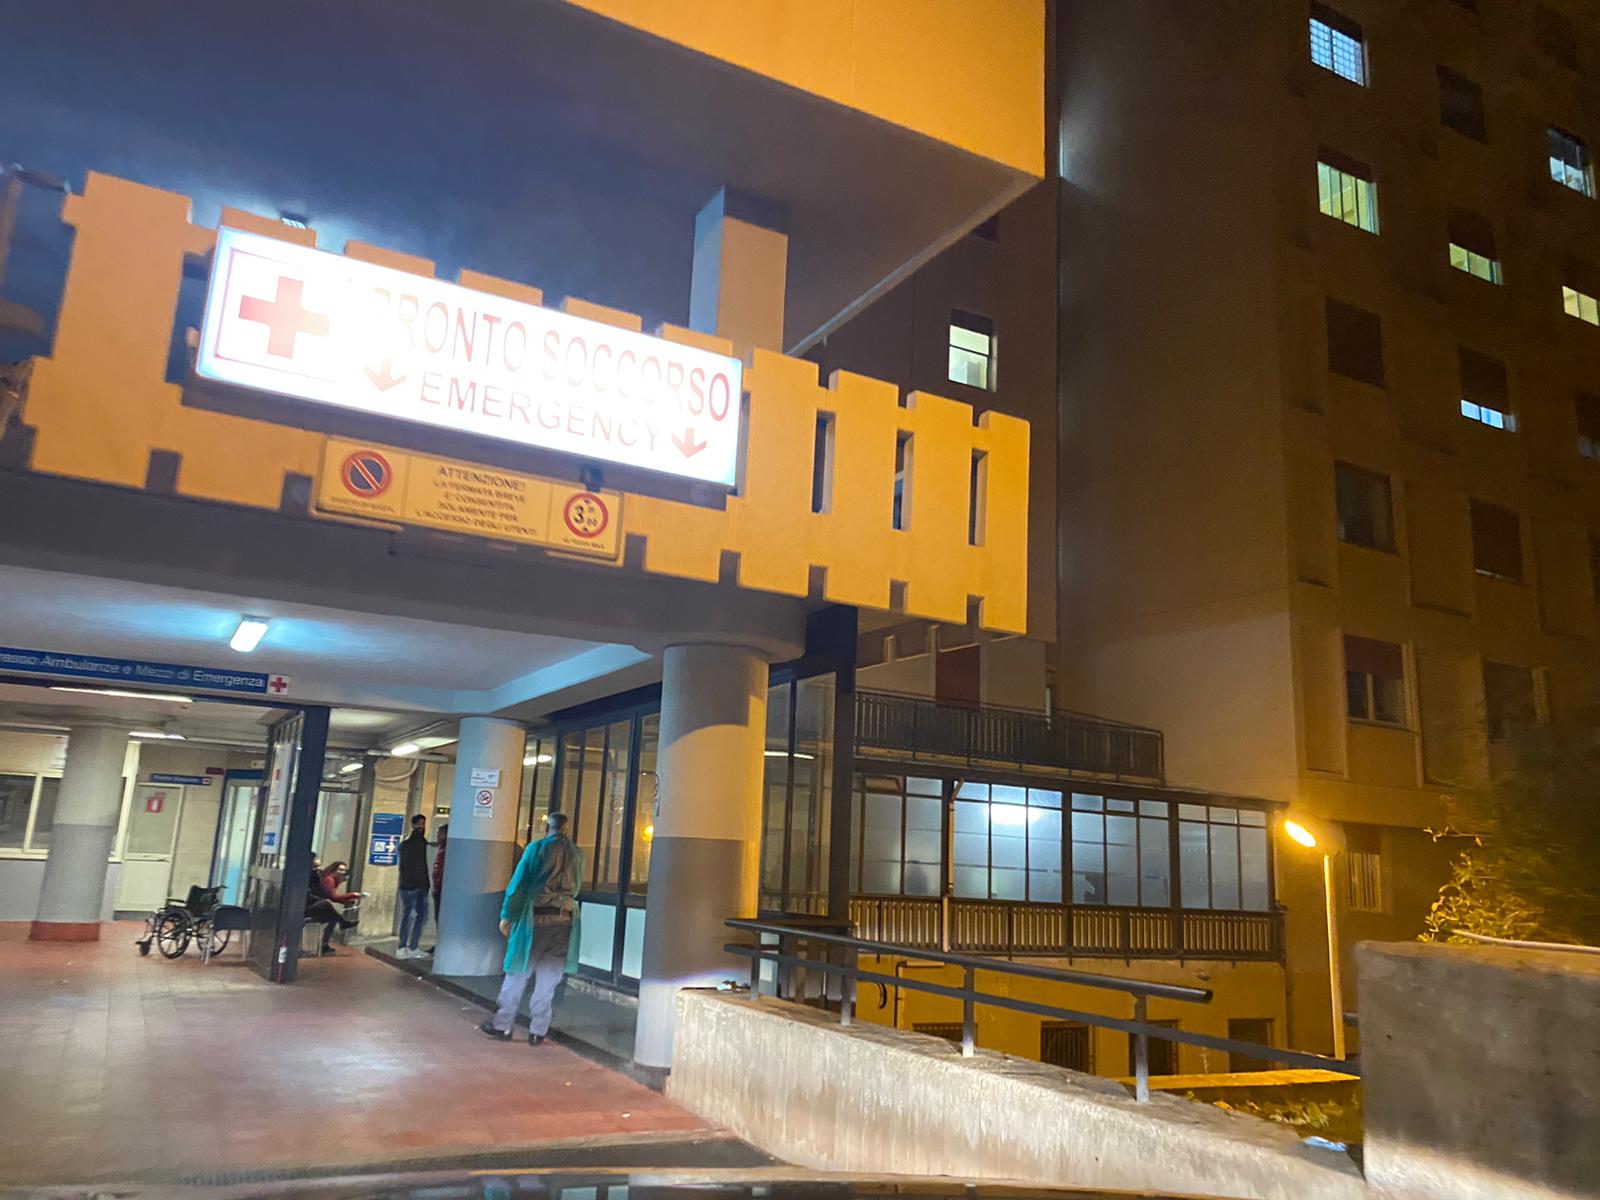 Medico aggredito all'ospedale di Termini Imerese, Asp: “Ci costituiremo parte civile”